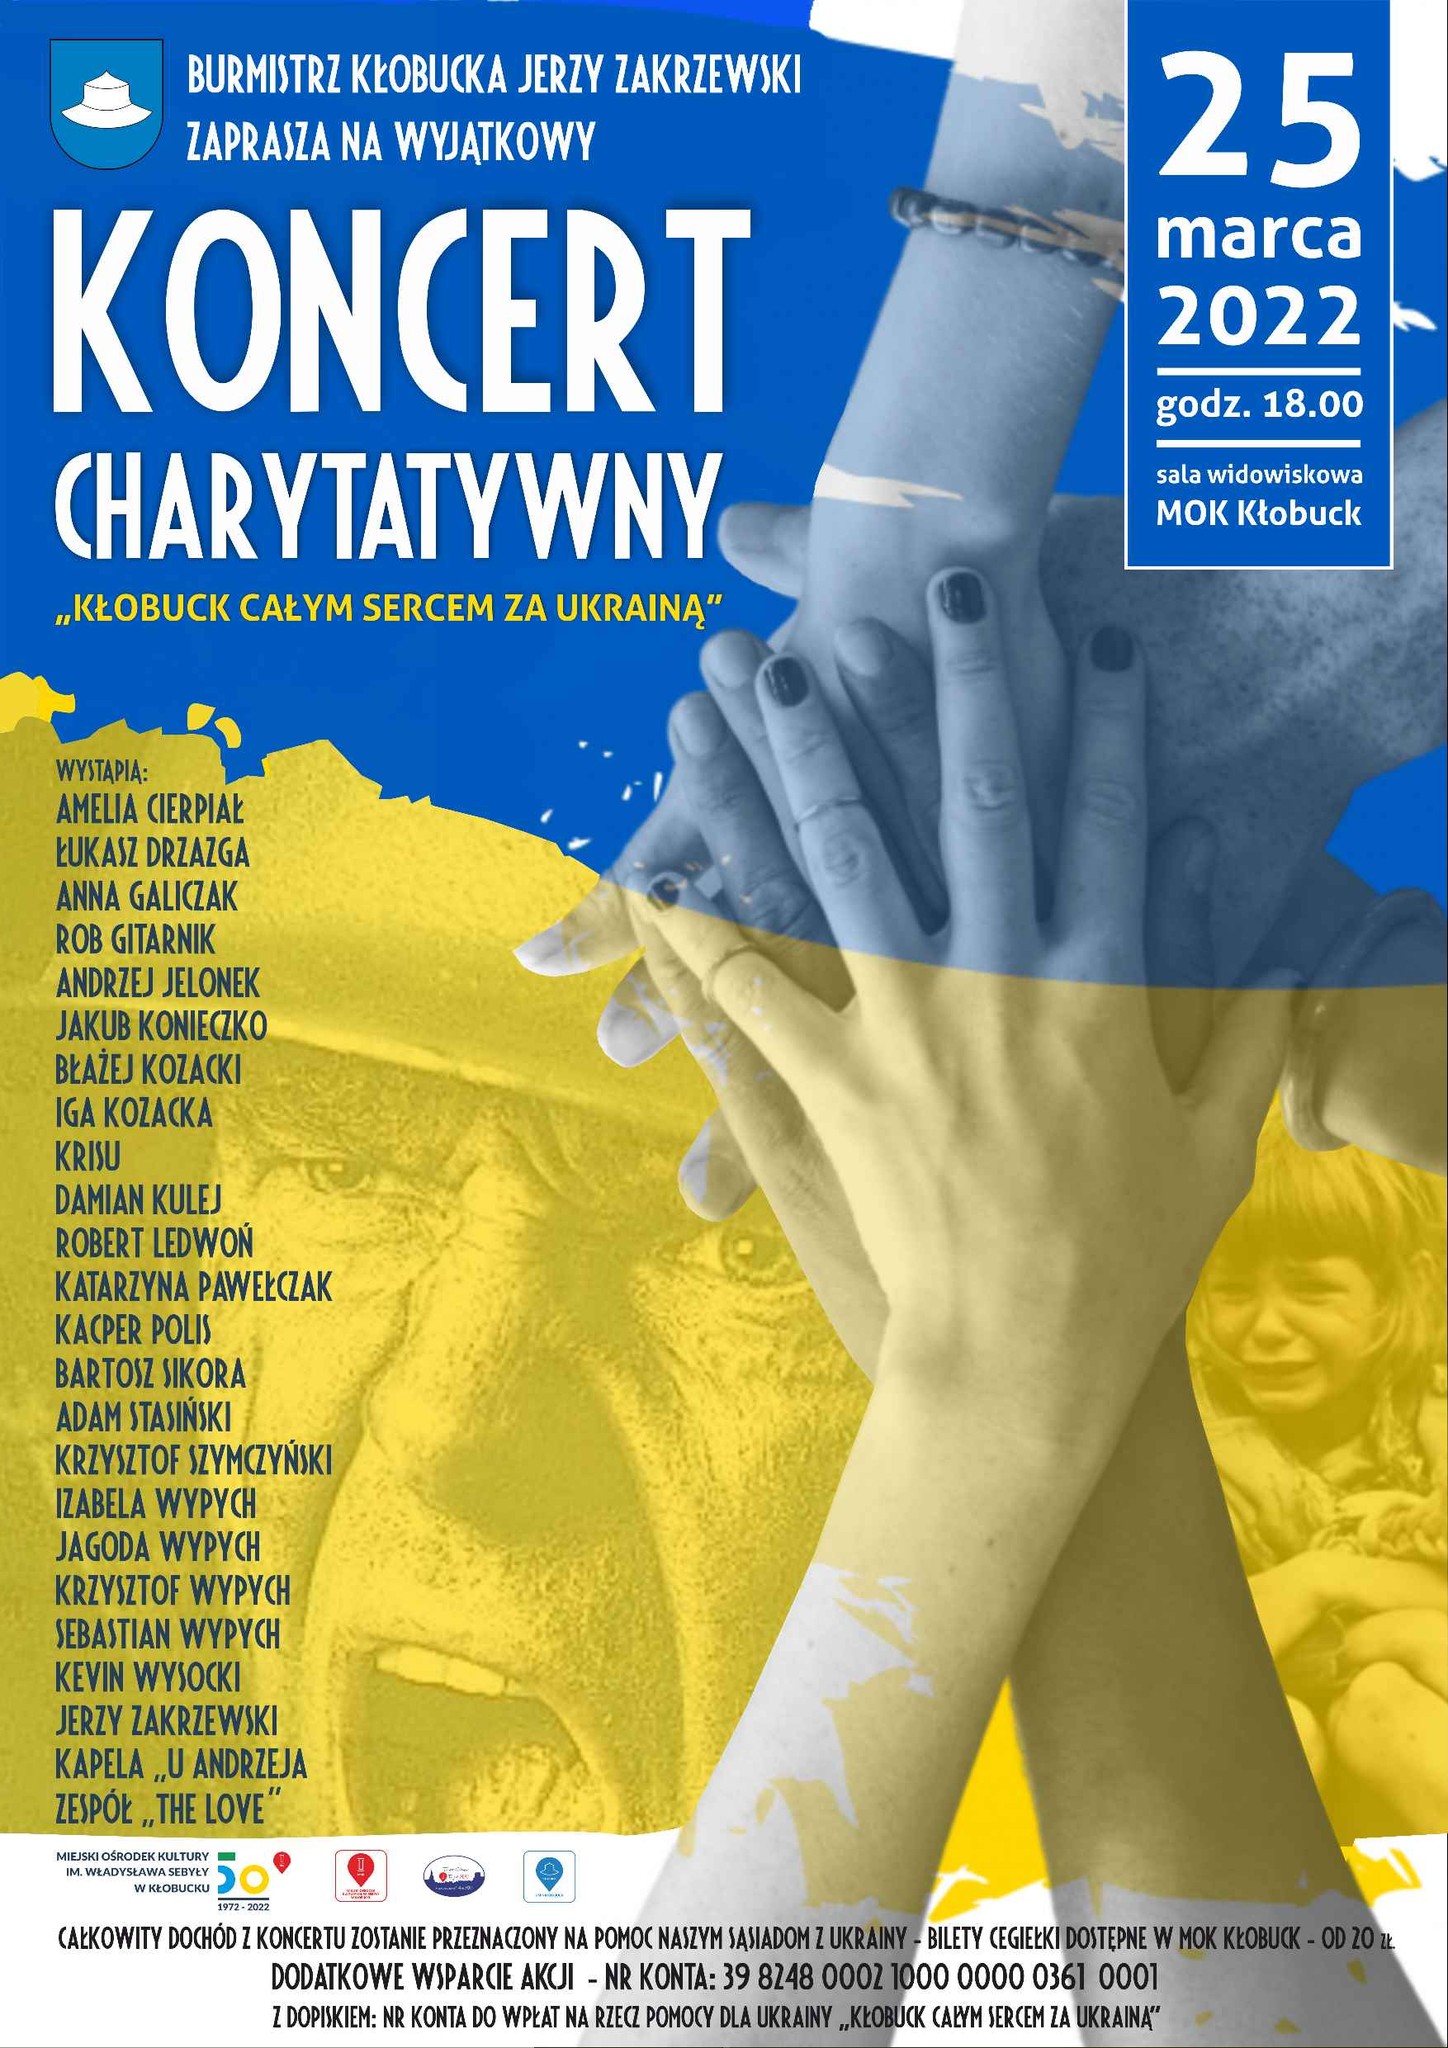 Kłobuck całym sercem z Ukrainą. Wyjątkowy koncert już 25 marca o godz. 18:00 3